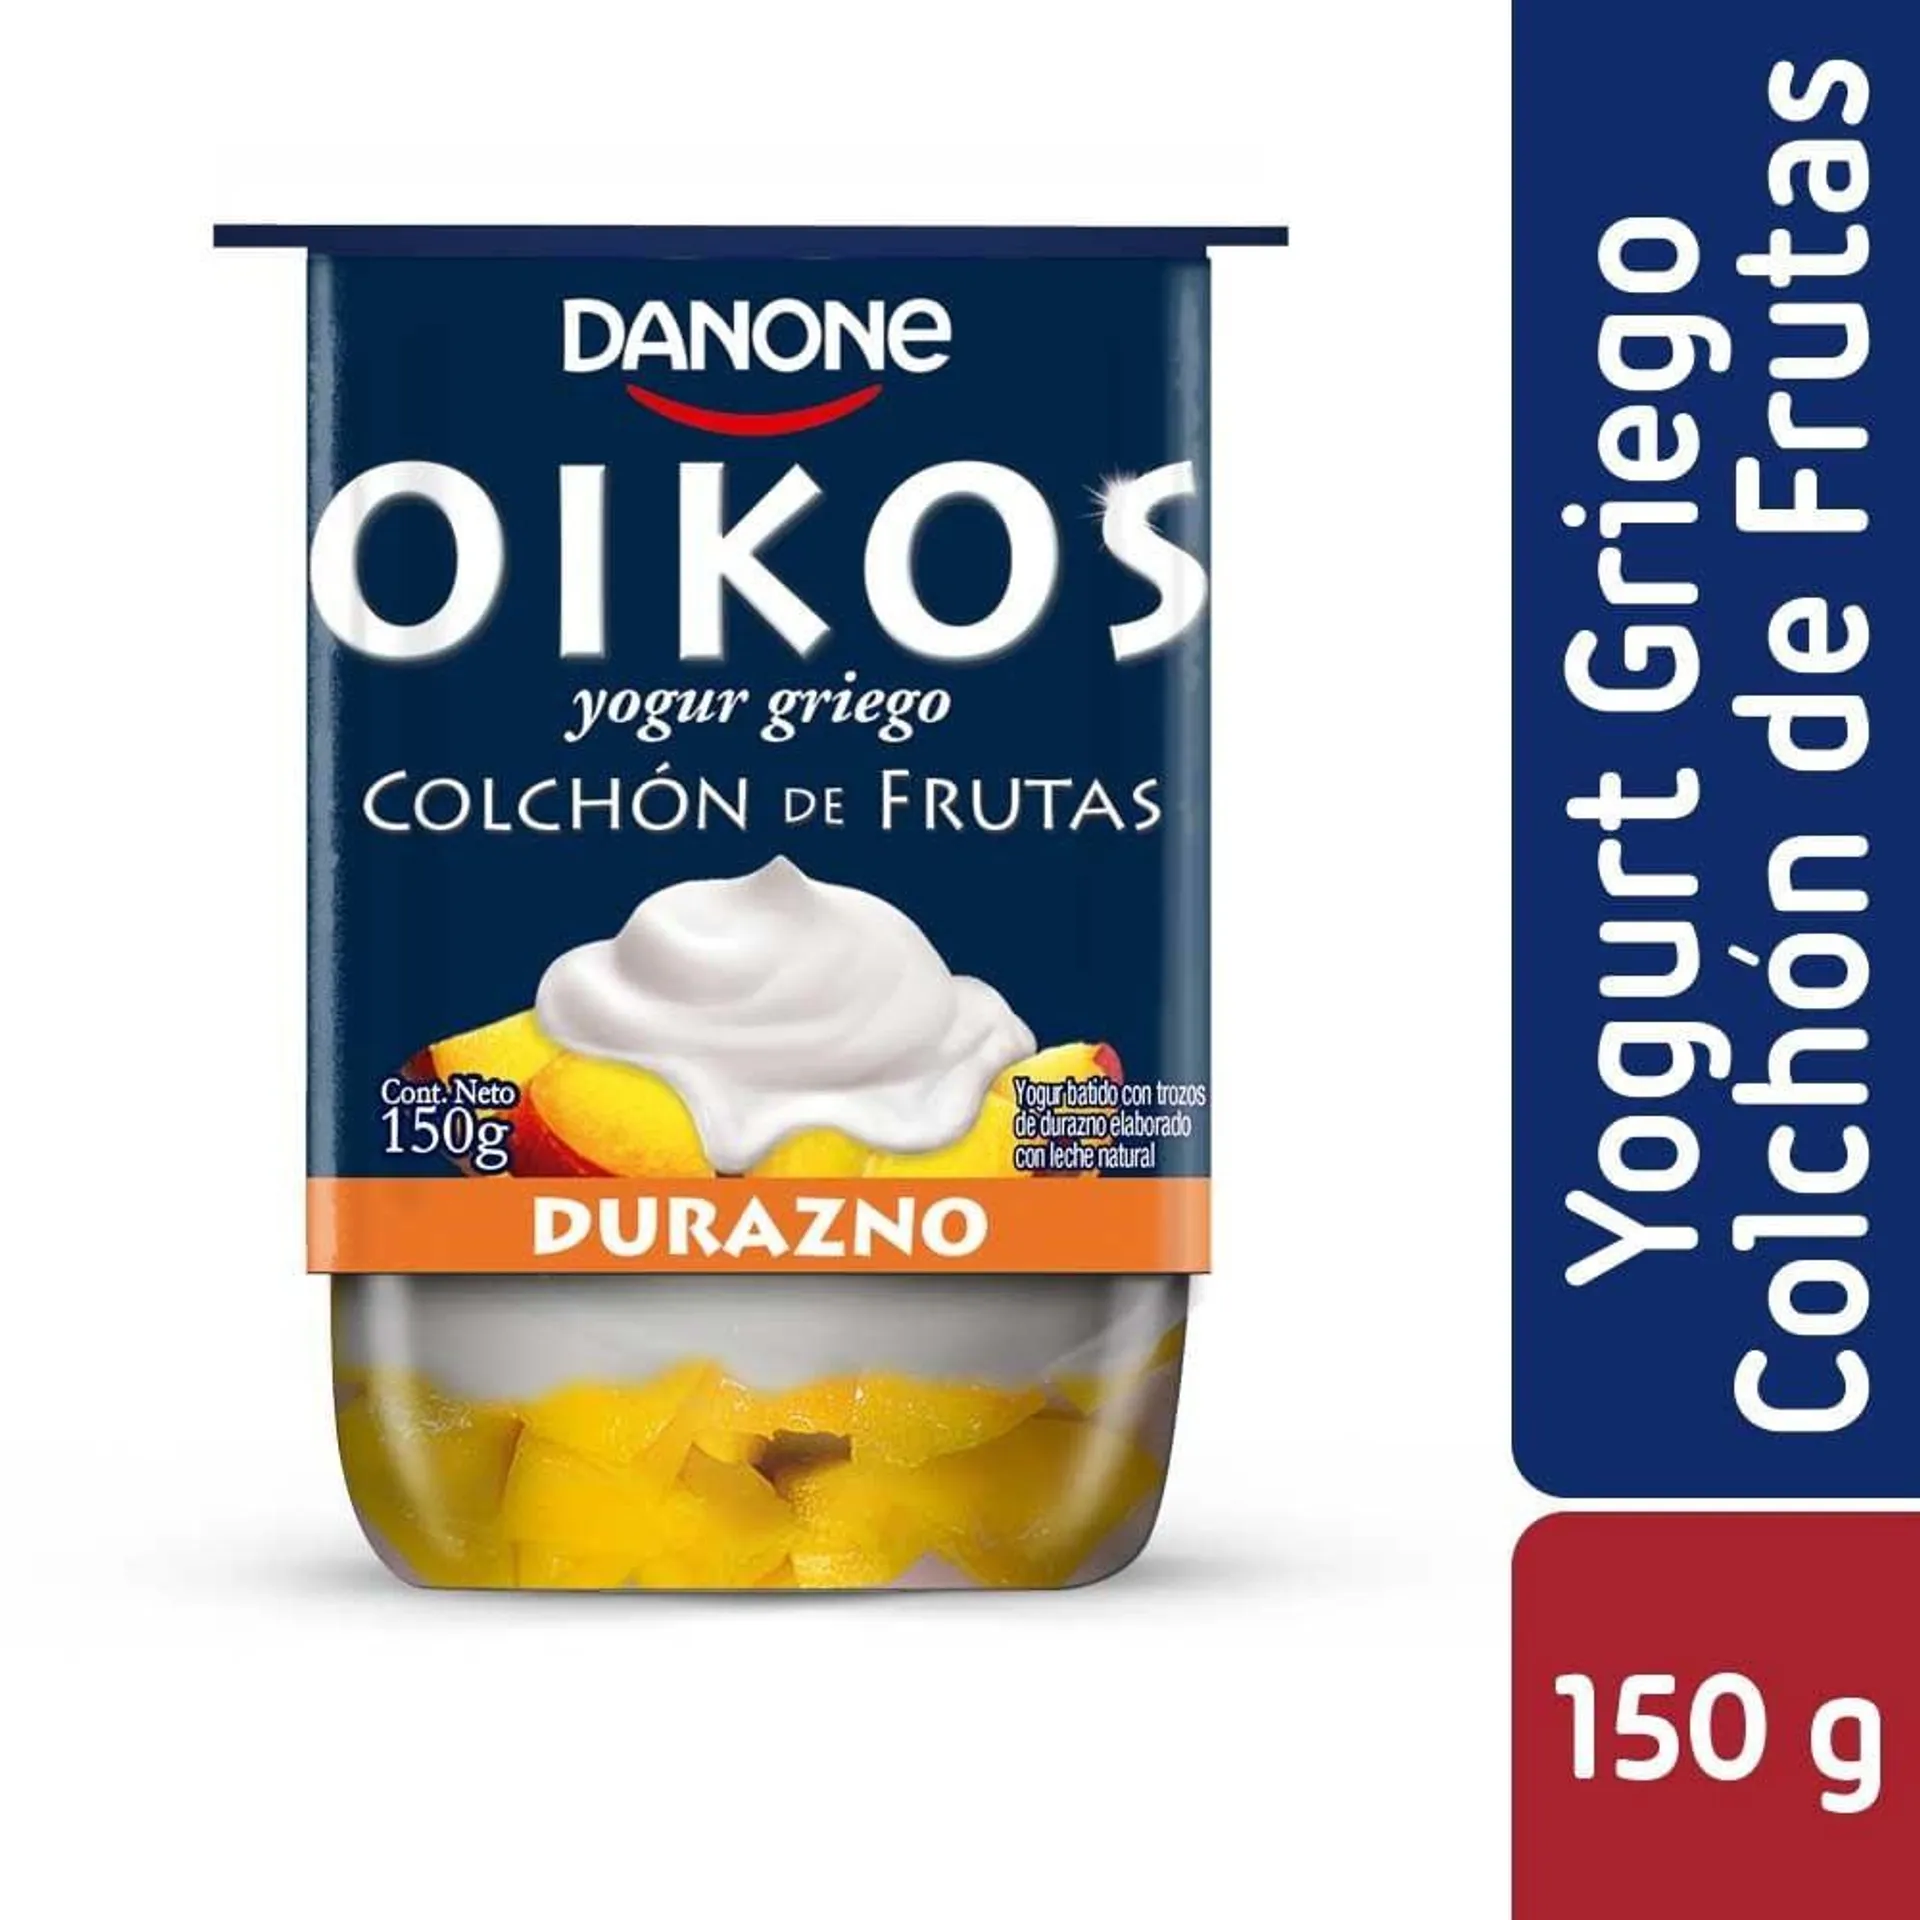 Yoghurt griego Danone Oikos colchón de fruta durazno 150 g